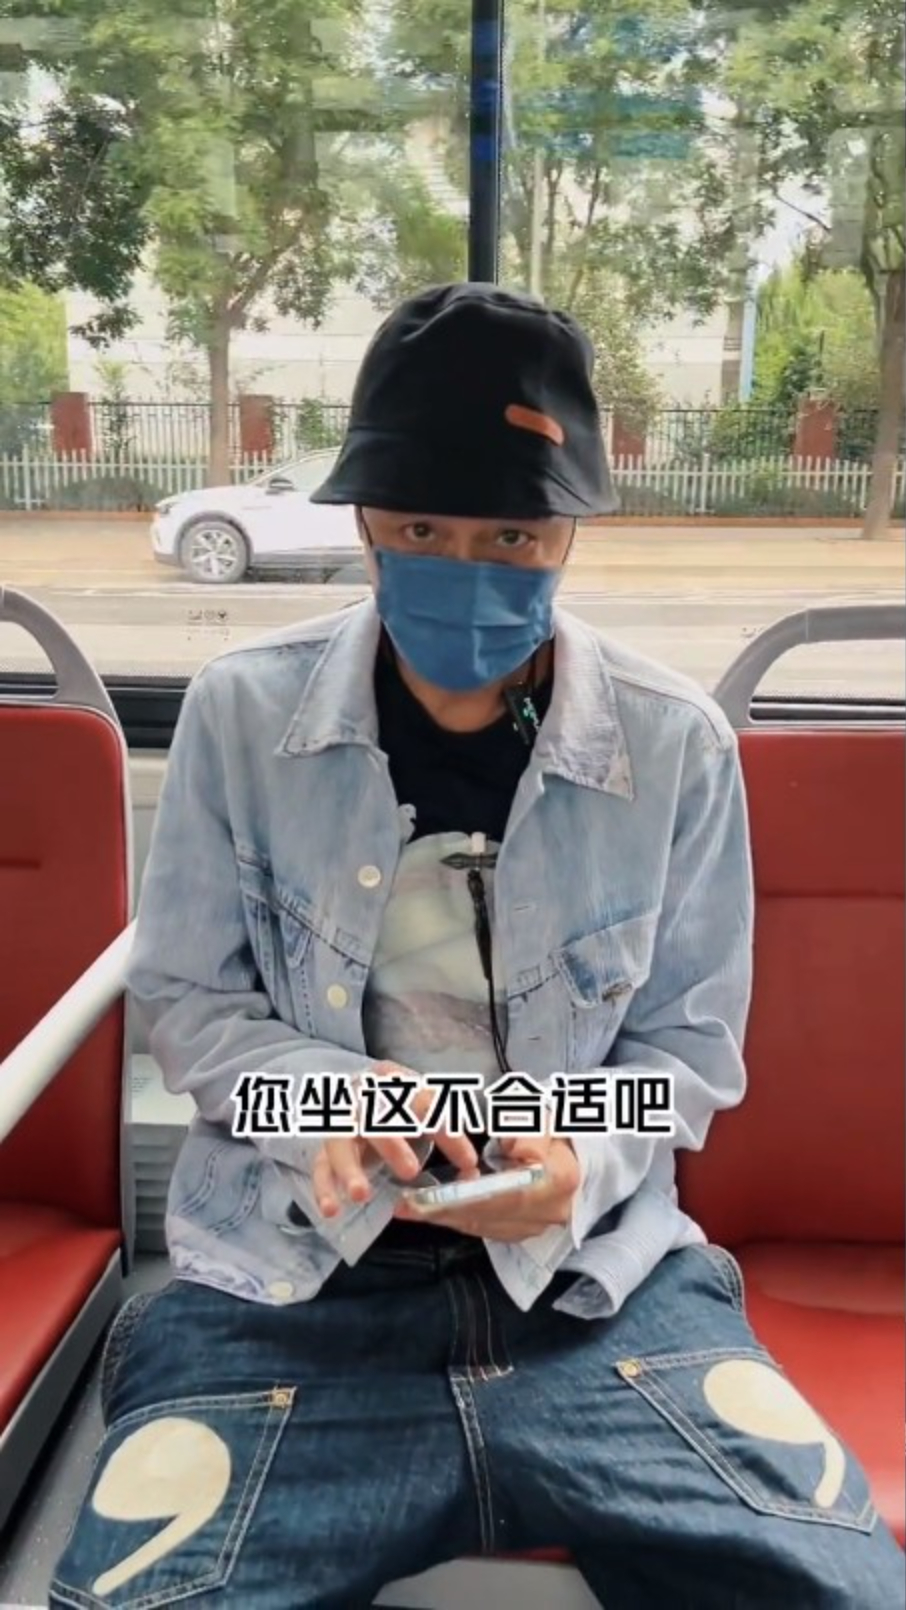 吴镇宇坐在博爱座后，有乘客指责他。（影片截图）